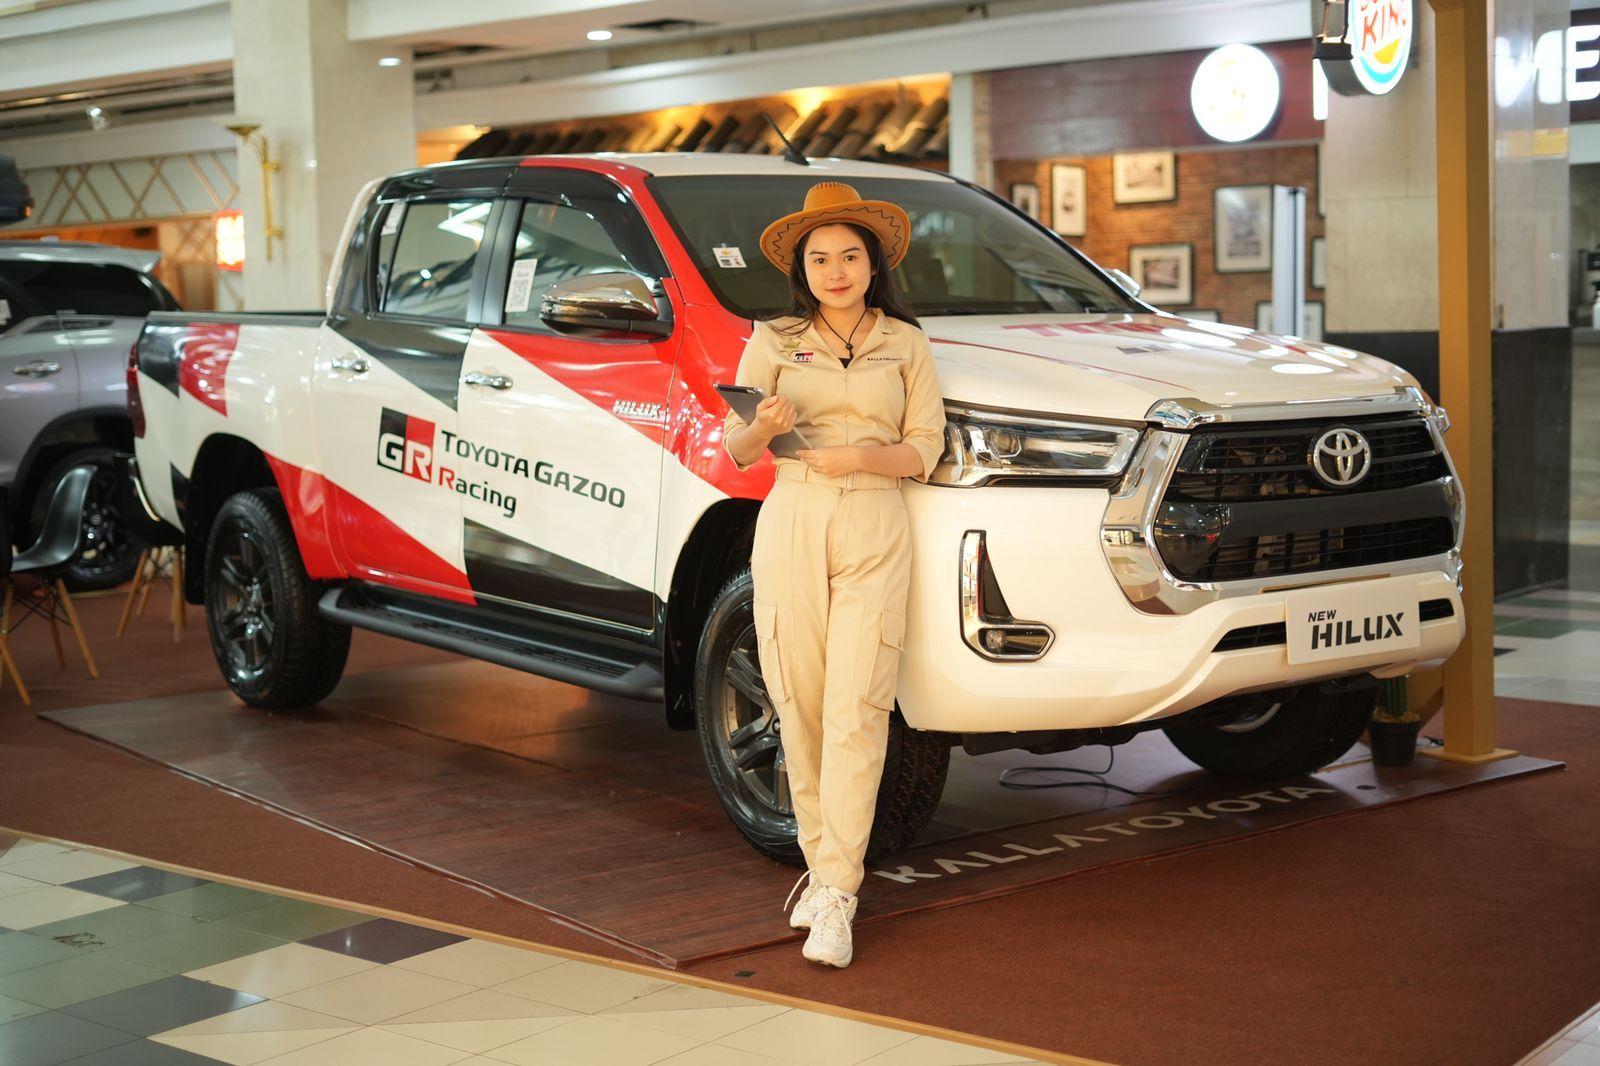 FOTO: Display New Toyota Hilux. FOTO: ISTIMEWA